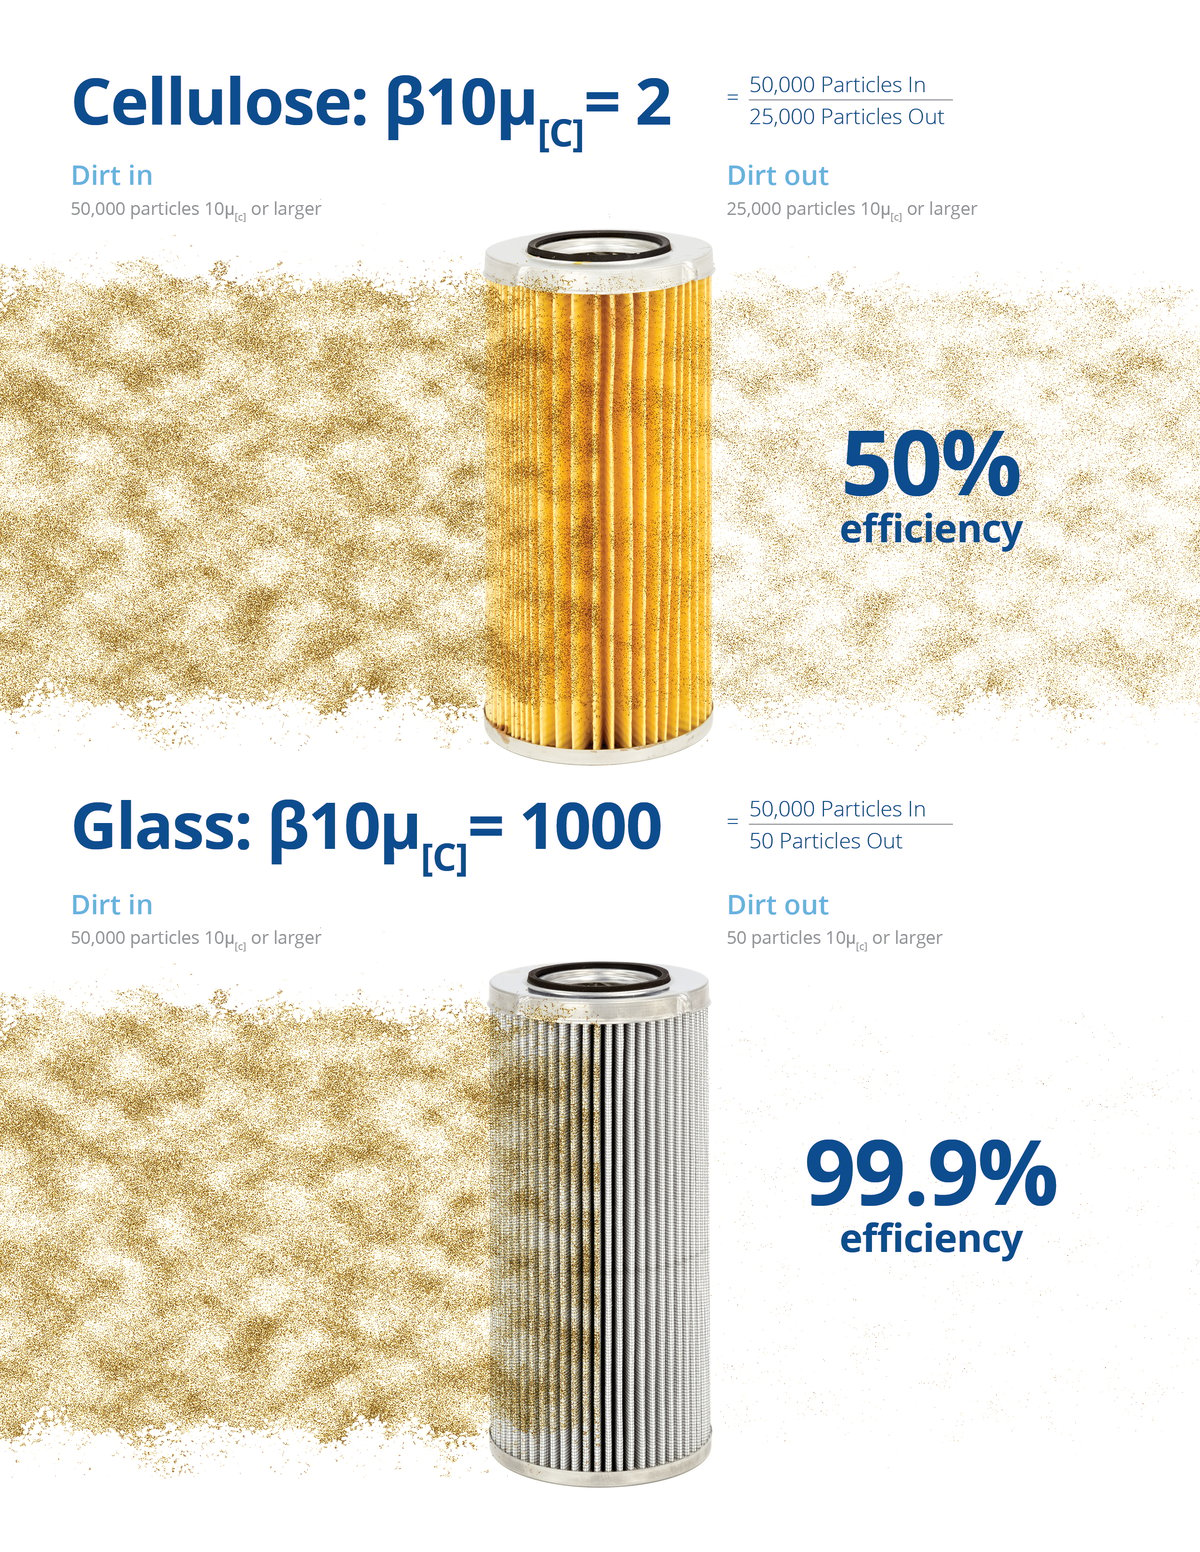 Cellulose vs Glass Efficiency Comparison